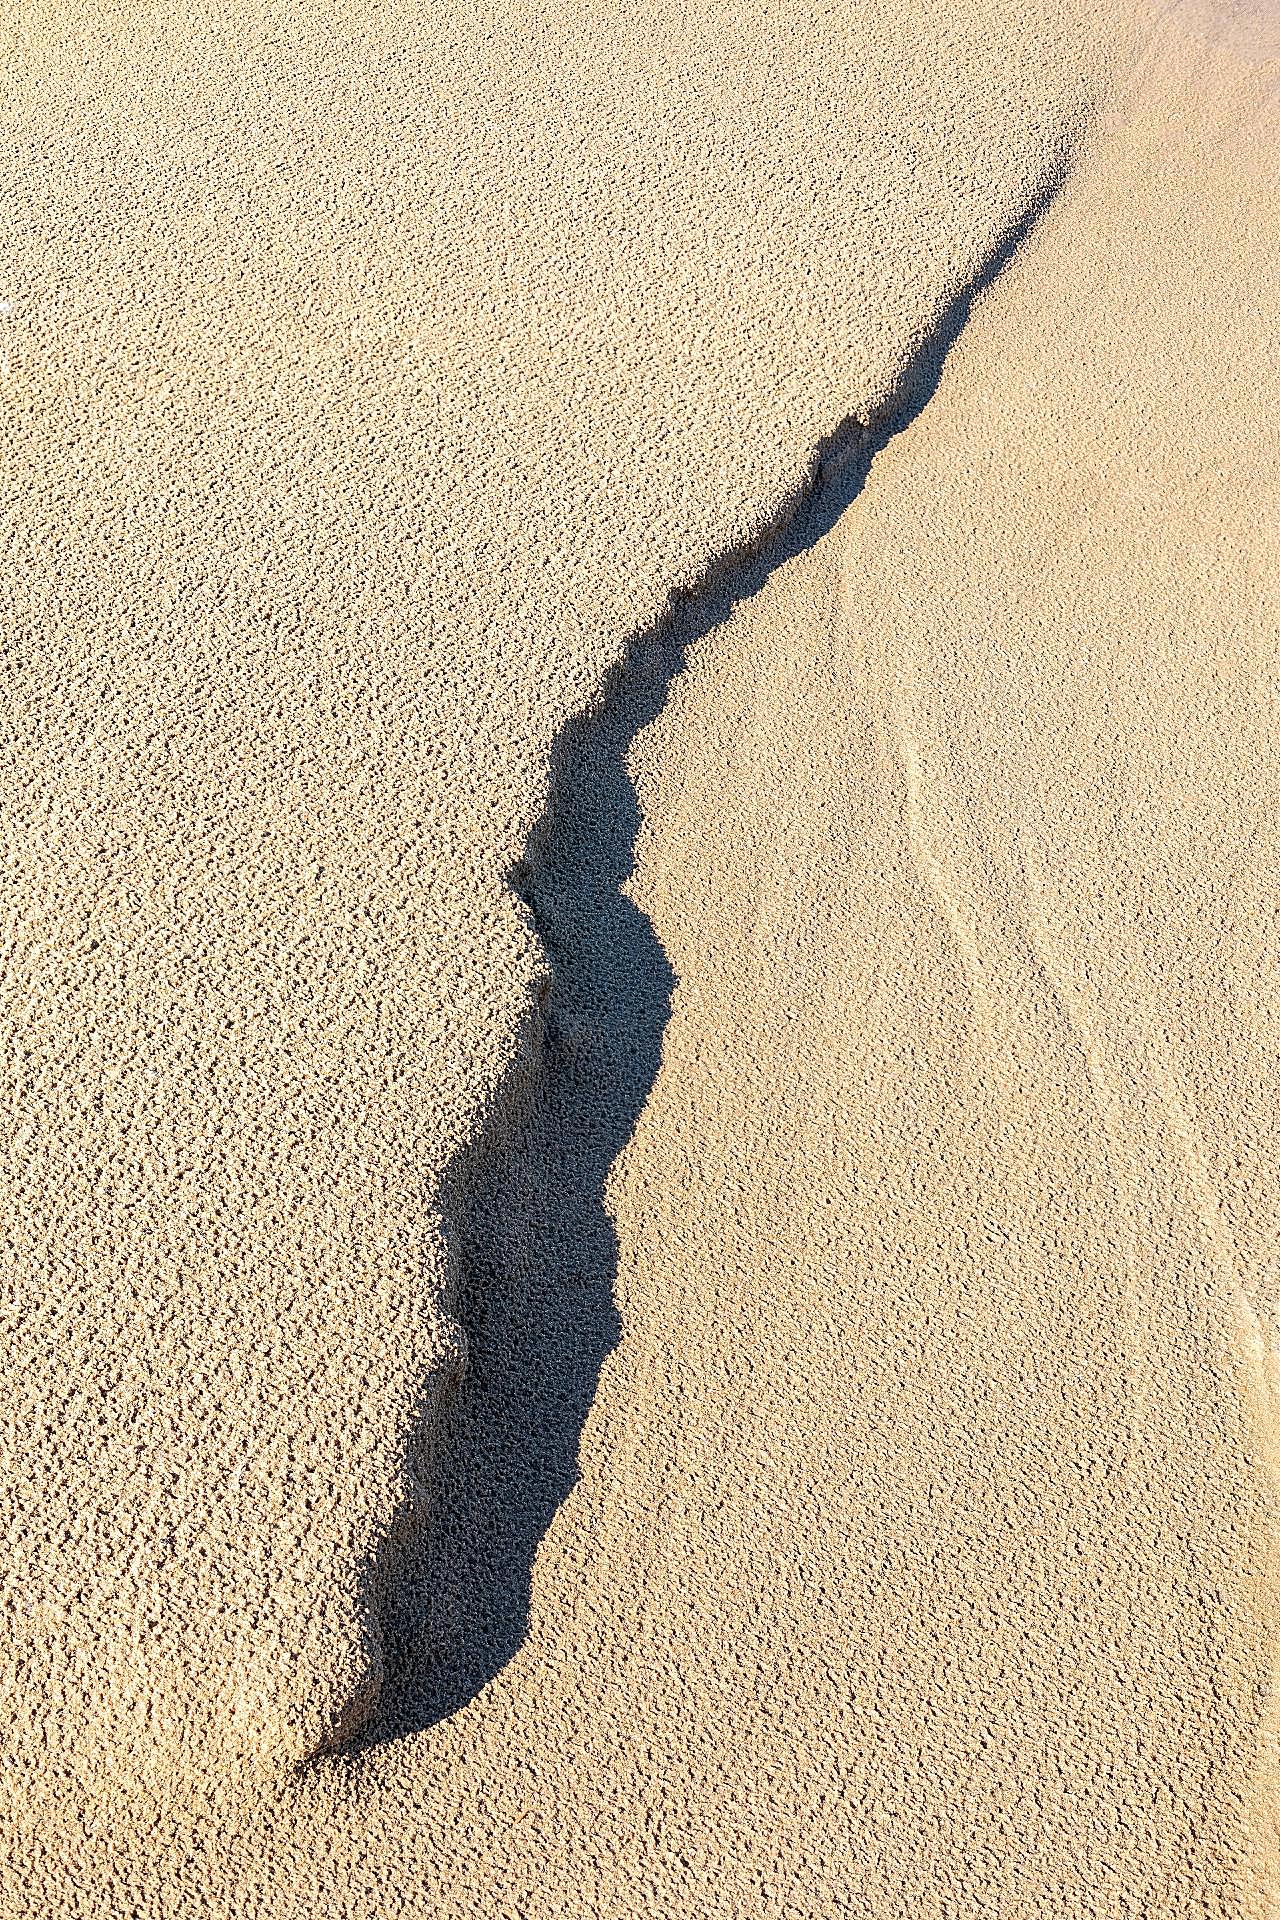 沙地纹理背景图片地面背景